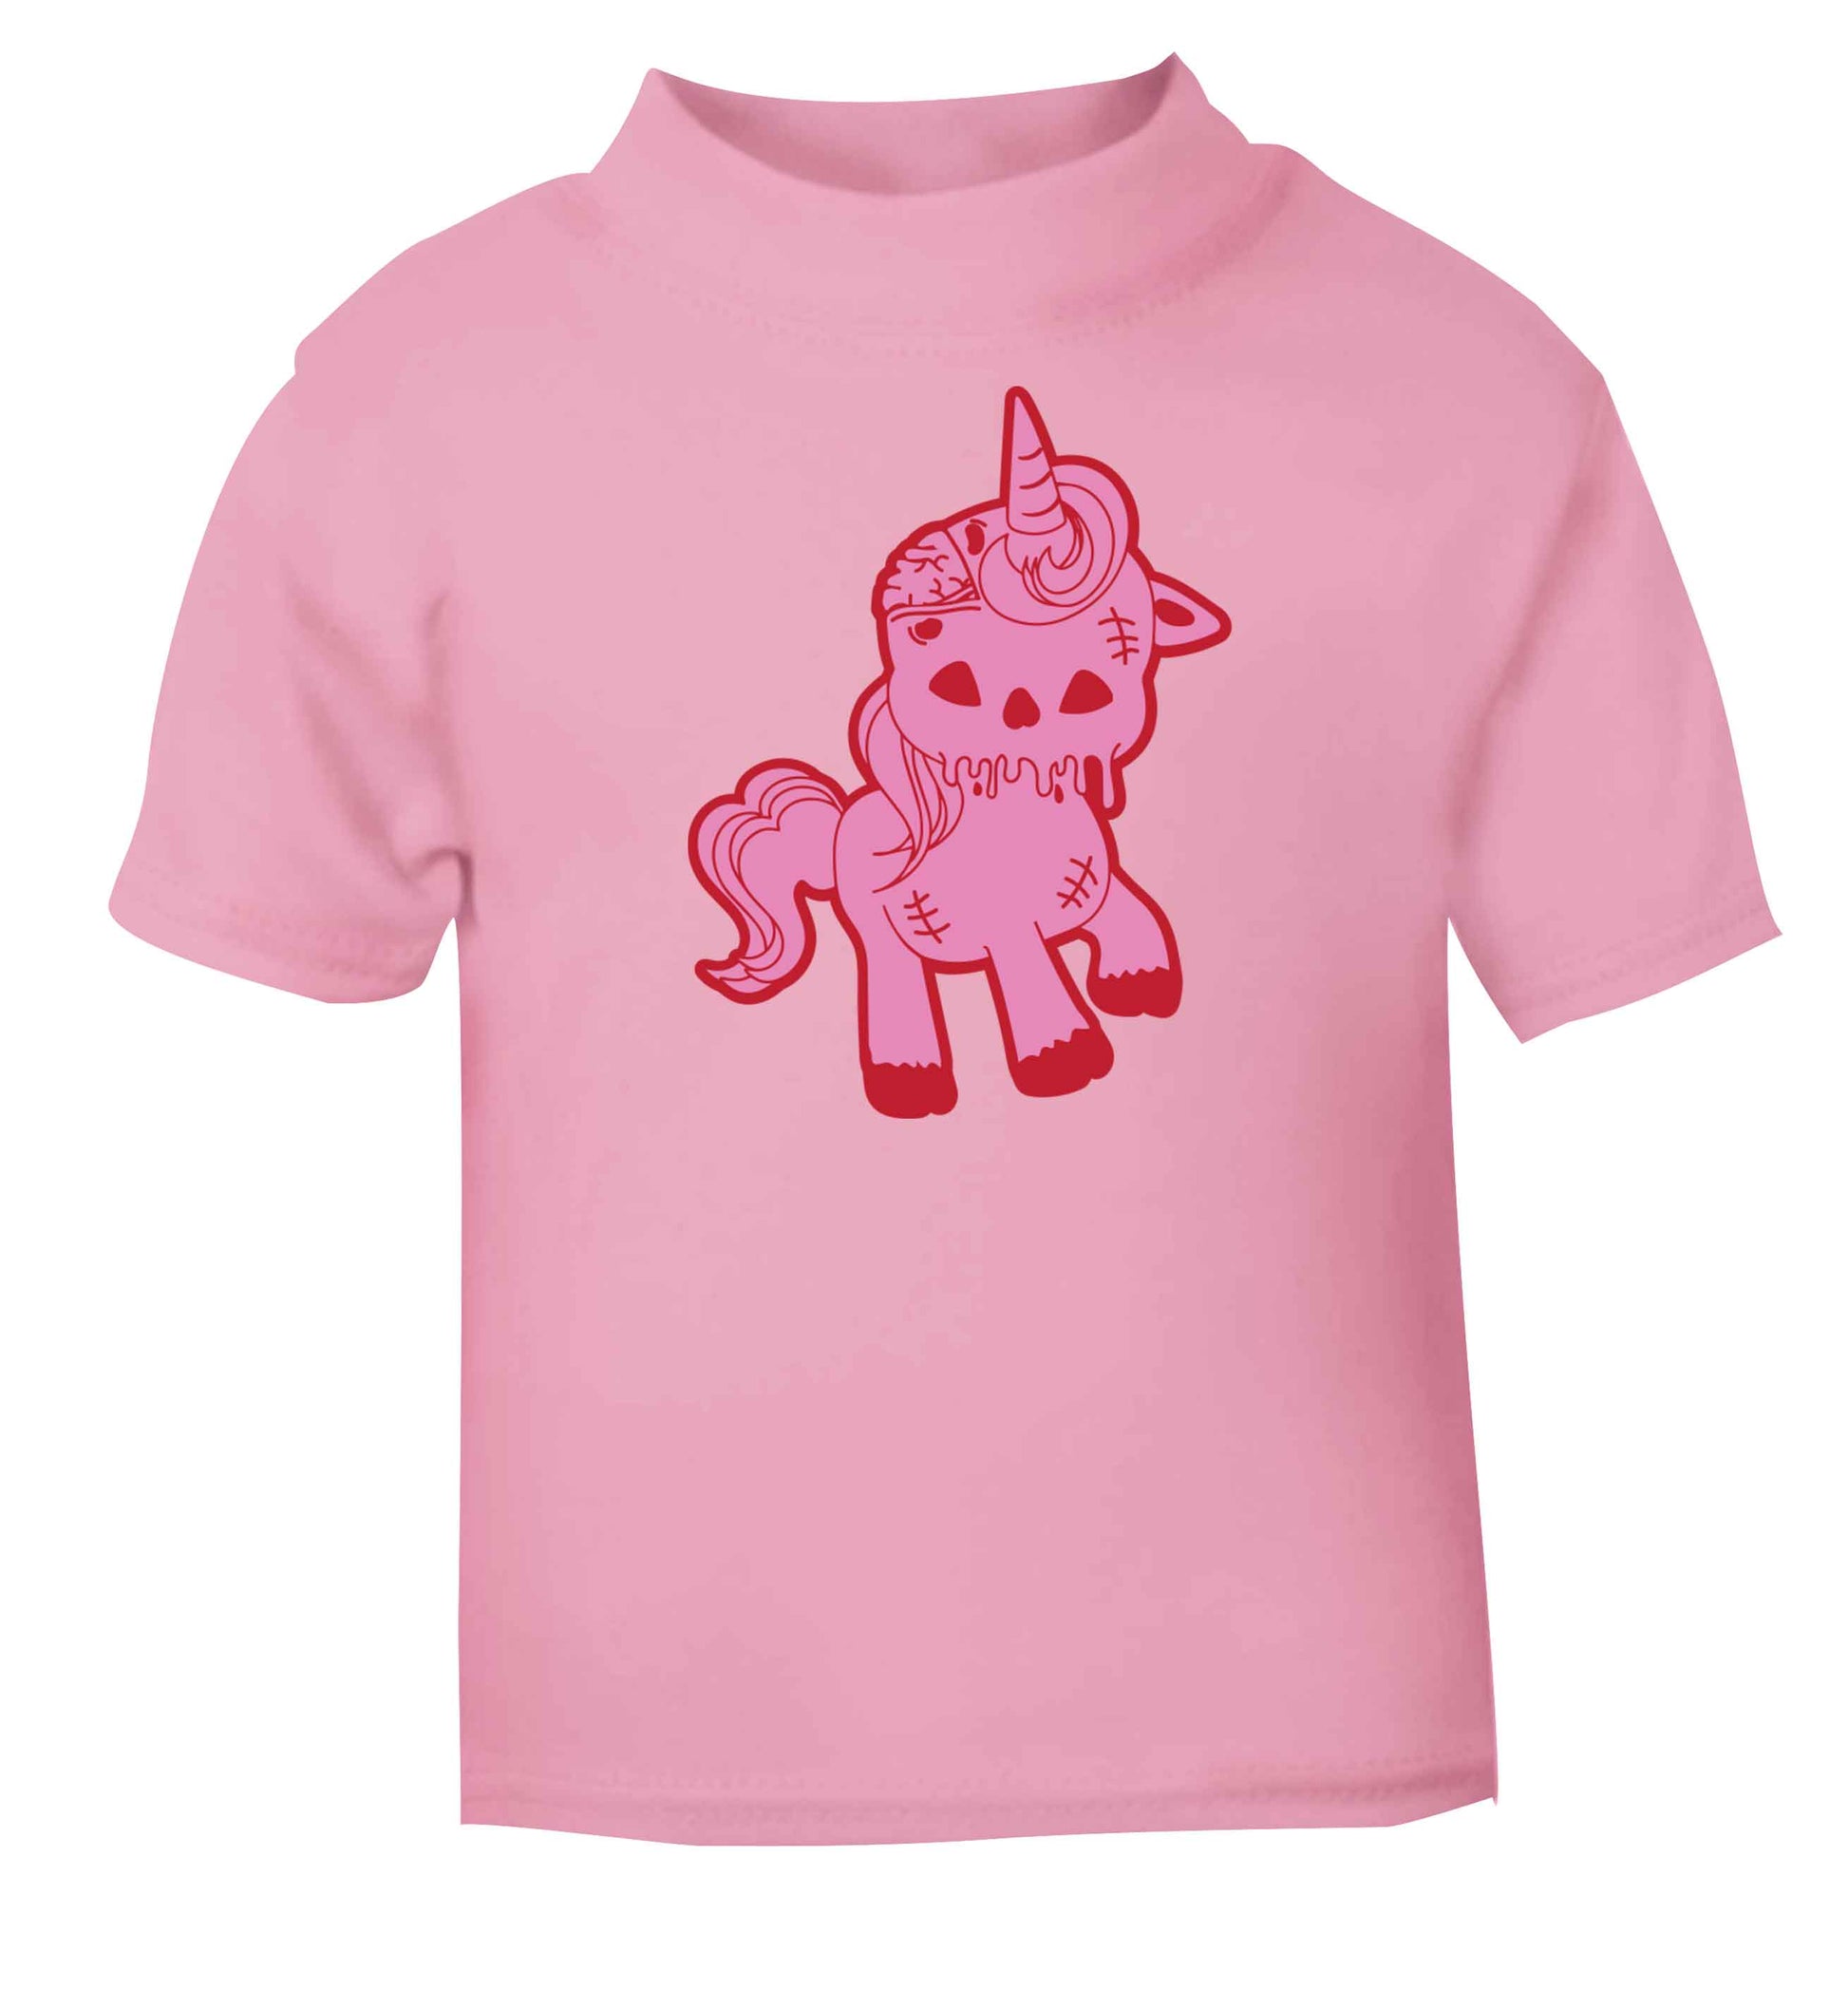 Zombie unicorn zombiecorn light pink baby toddler Tshirt 2 Years